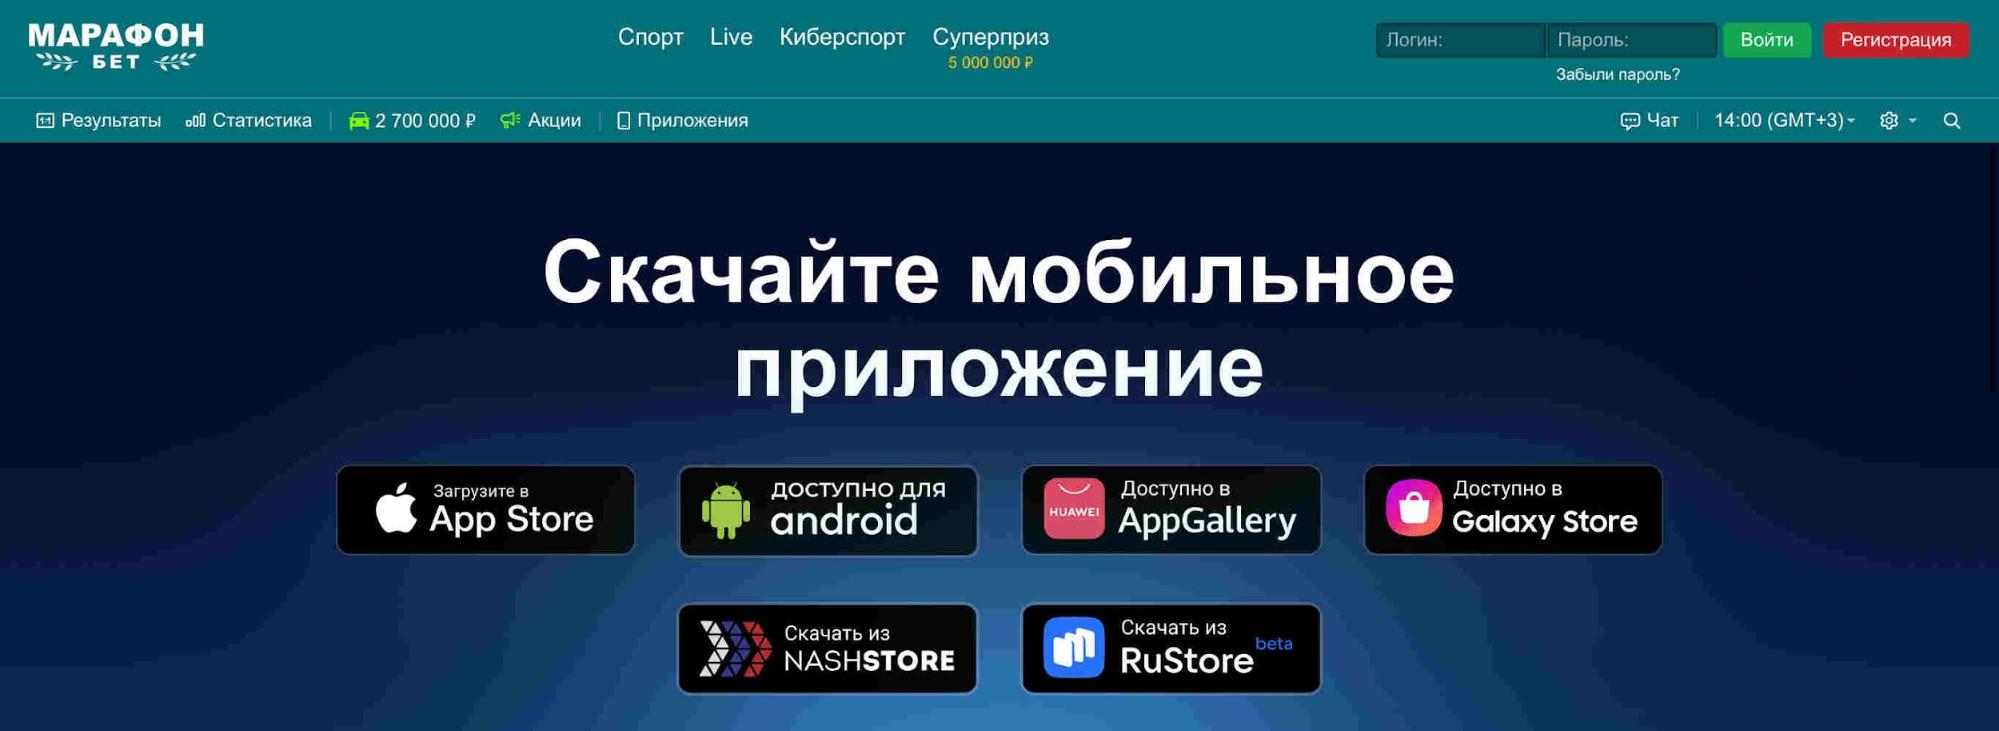 Скачать приложение Марафон через App Store